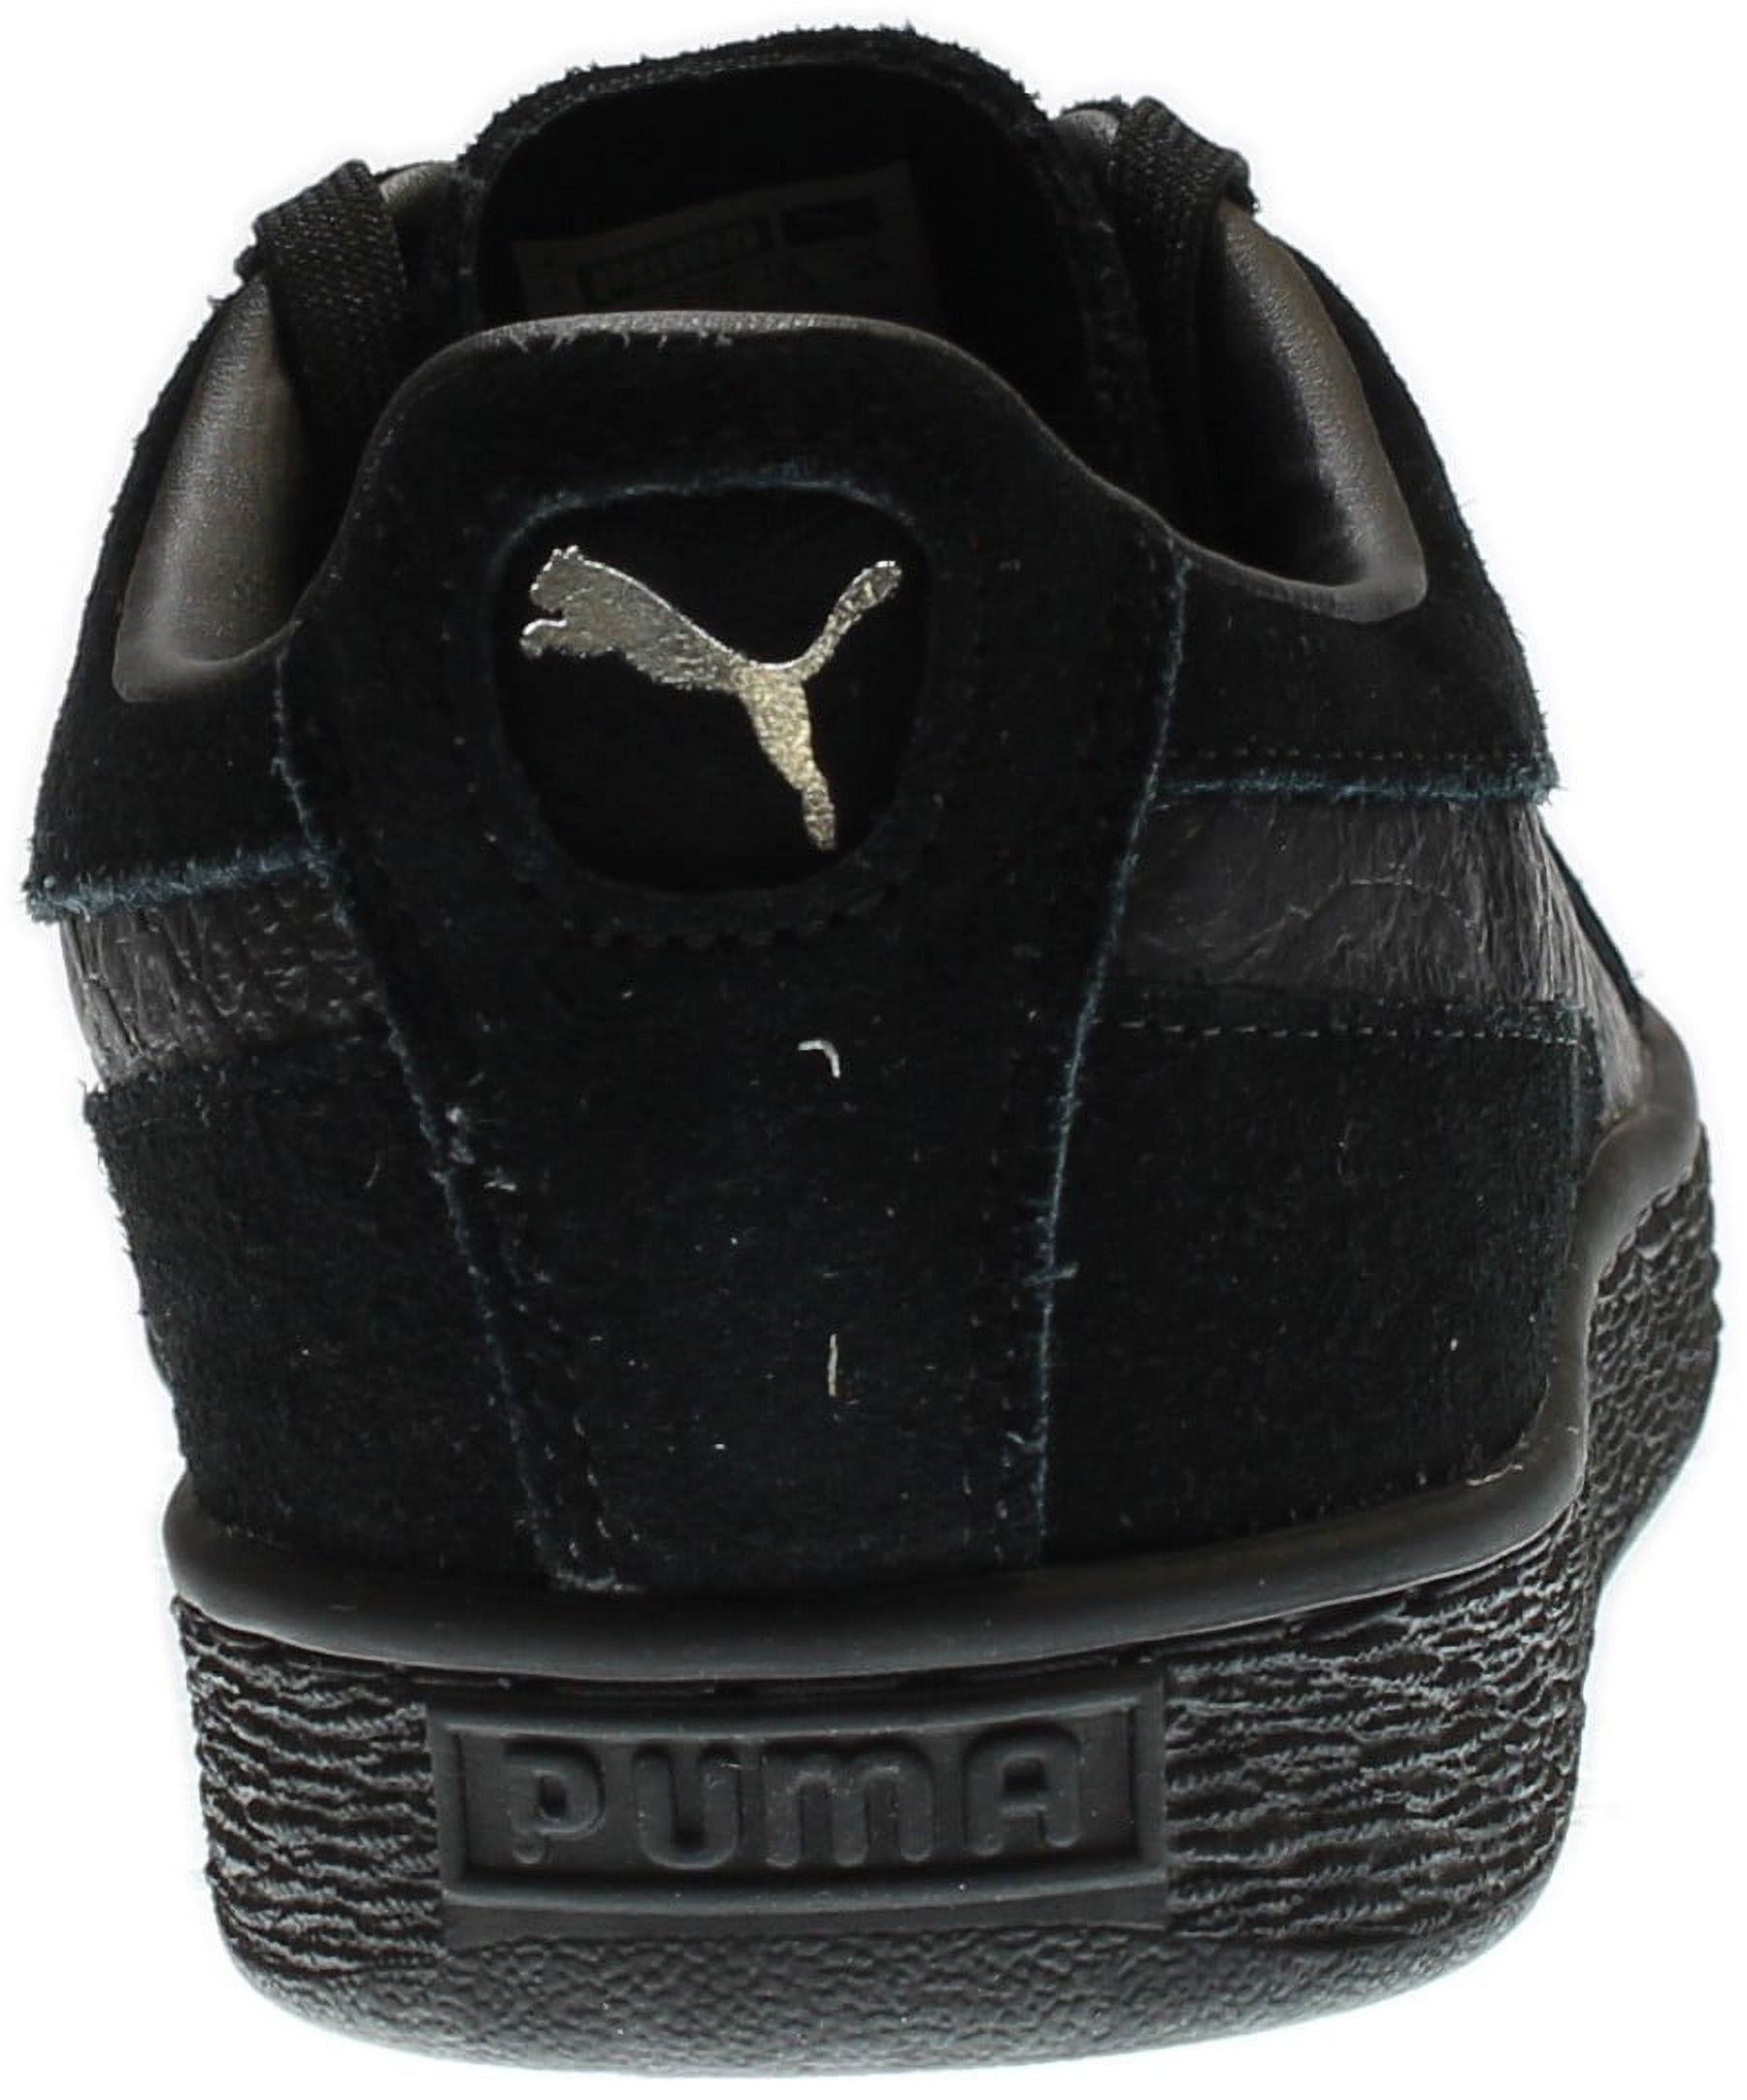 PUMA 363164-06 : Men's Suede Classic Mono Reptile Fashion Sneaker, Black (Puma Black-puma Silv, 10.5 D(M) US) - image 3 of 7